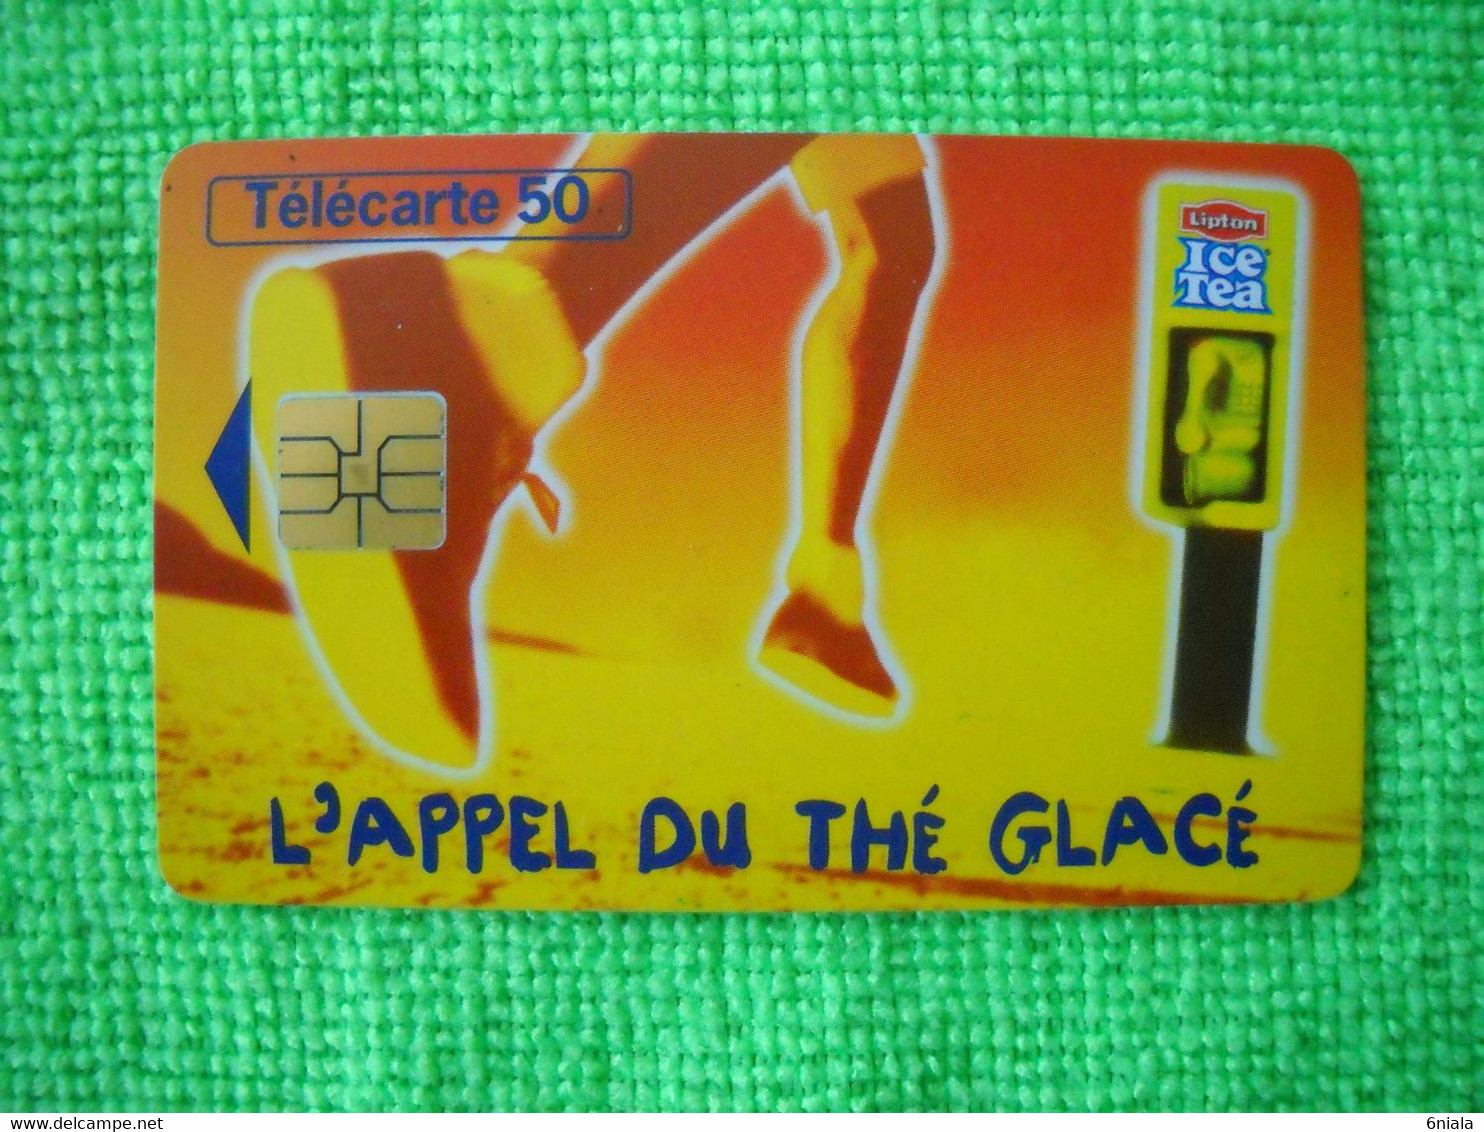 7083 Télécarte Collection ICE TEA L'appel Du Thé Glacé   (Boisson) 50u  ( Recto Verso)  Carte Téléphonique - Levensmiddelen